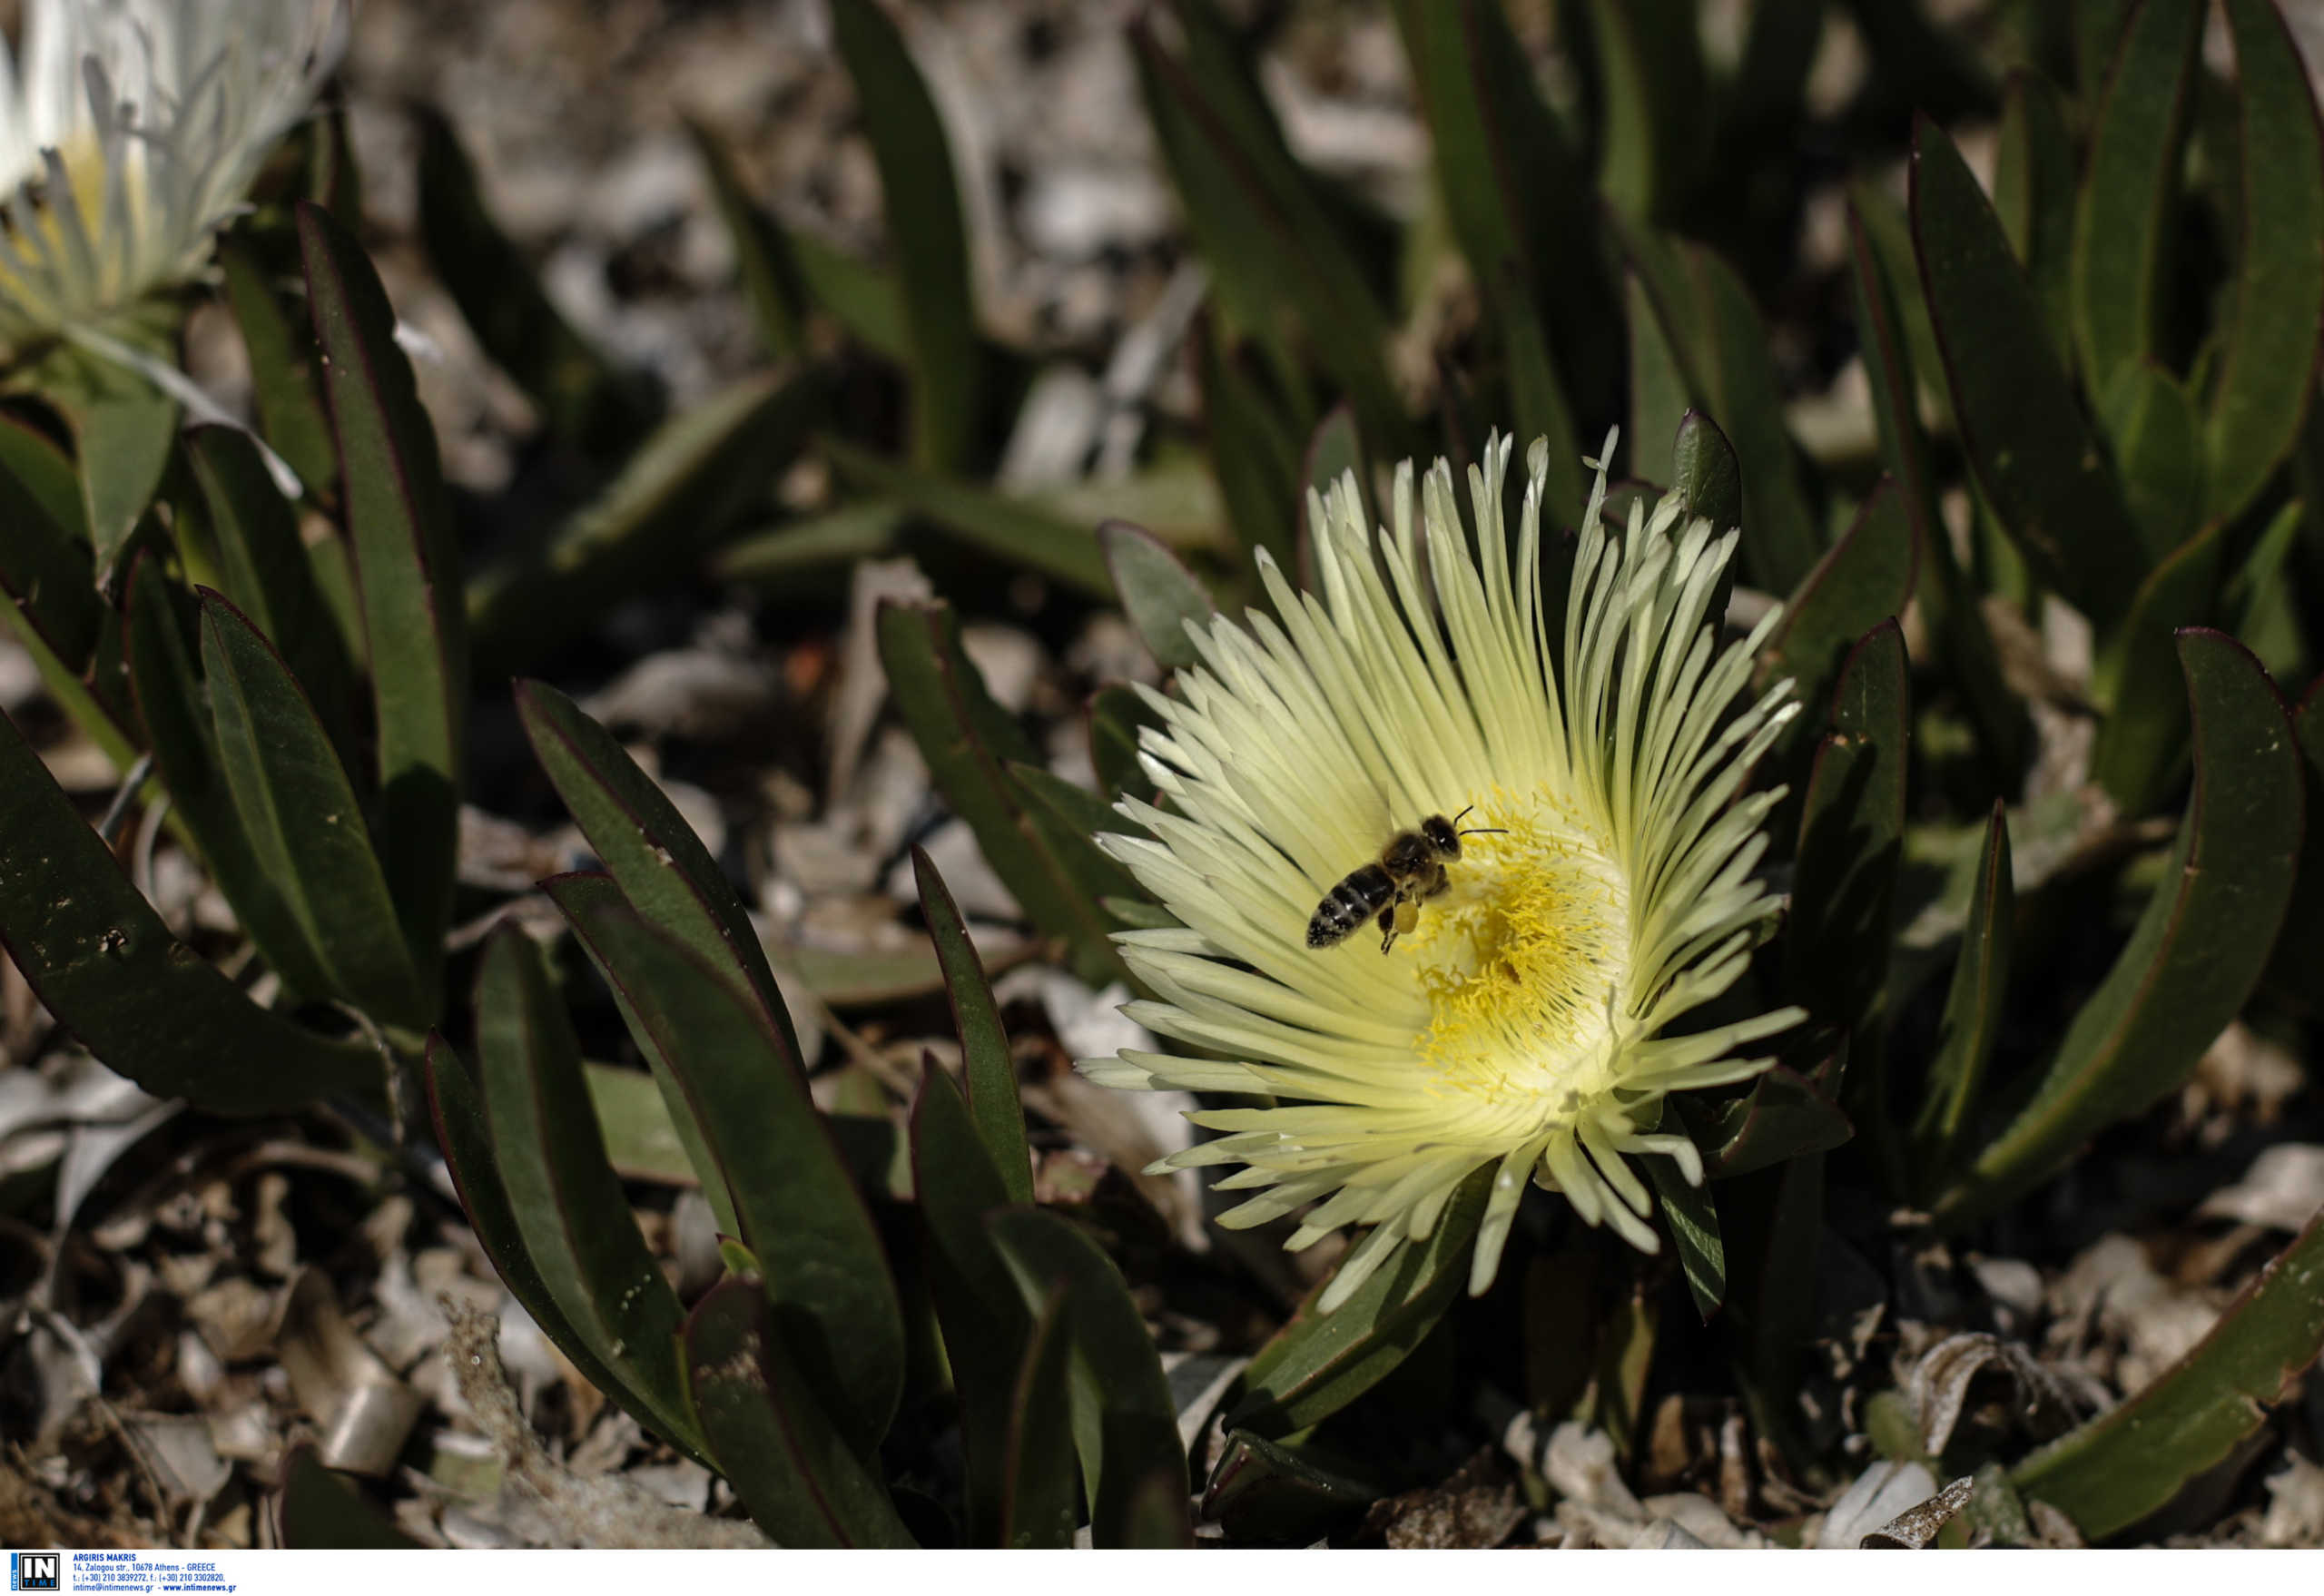 Ζάκυνθος: Τον σκότωσαν οι μέλισσες! Έπαθε αλλεργικό σοκ από τα τσιμπήματα και έπεσε νεκρός